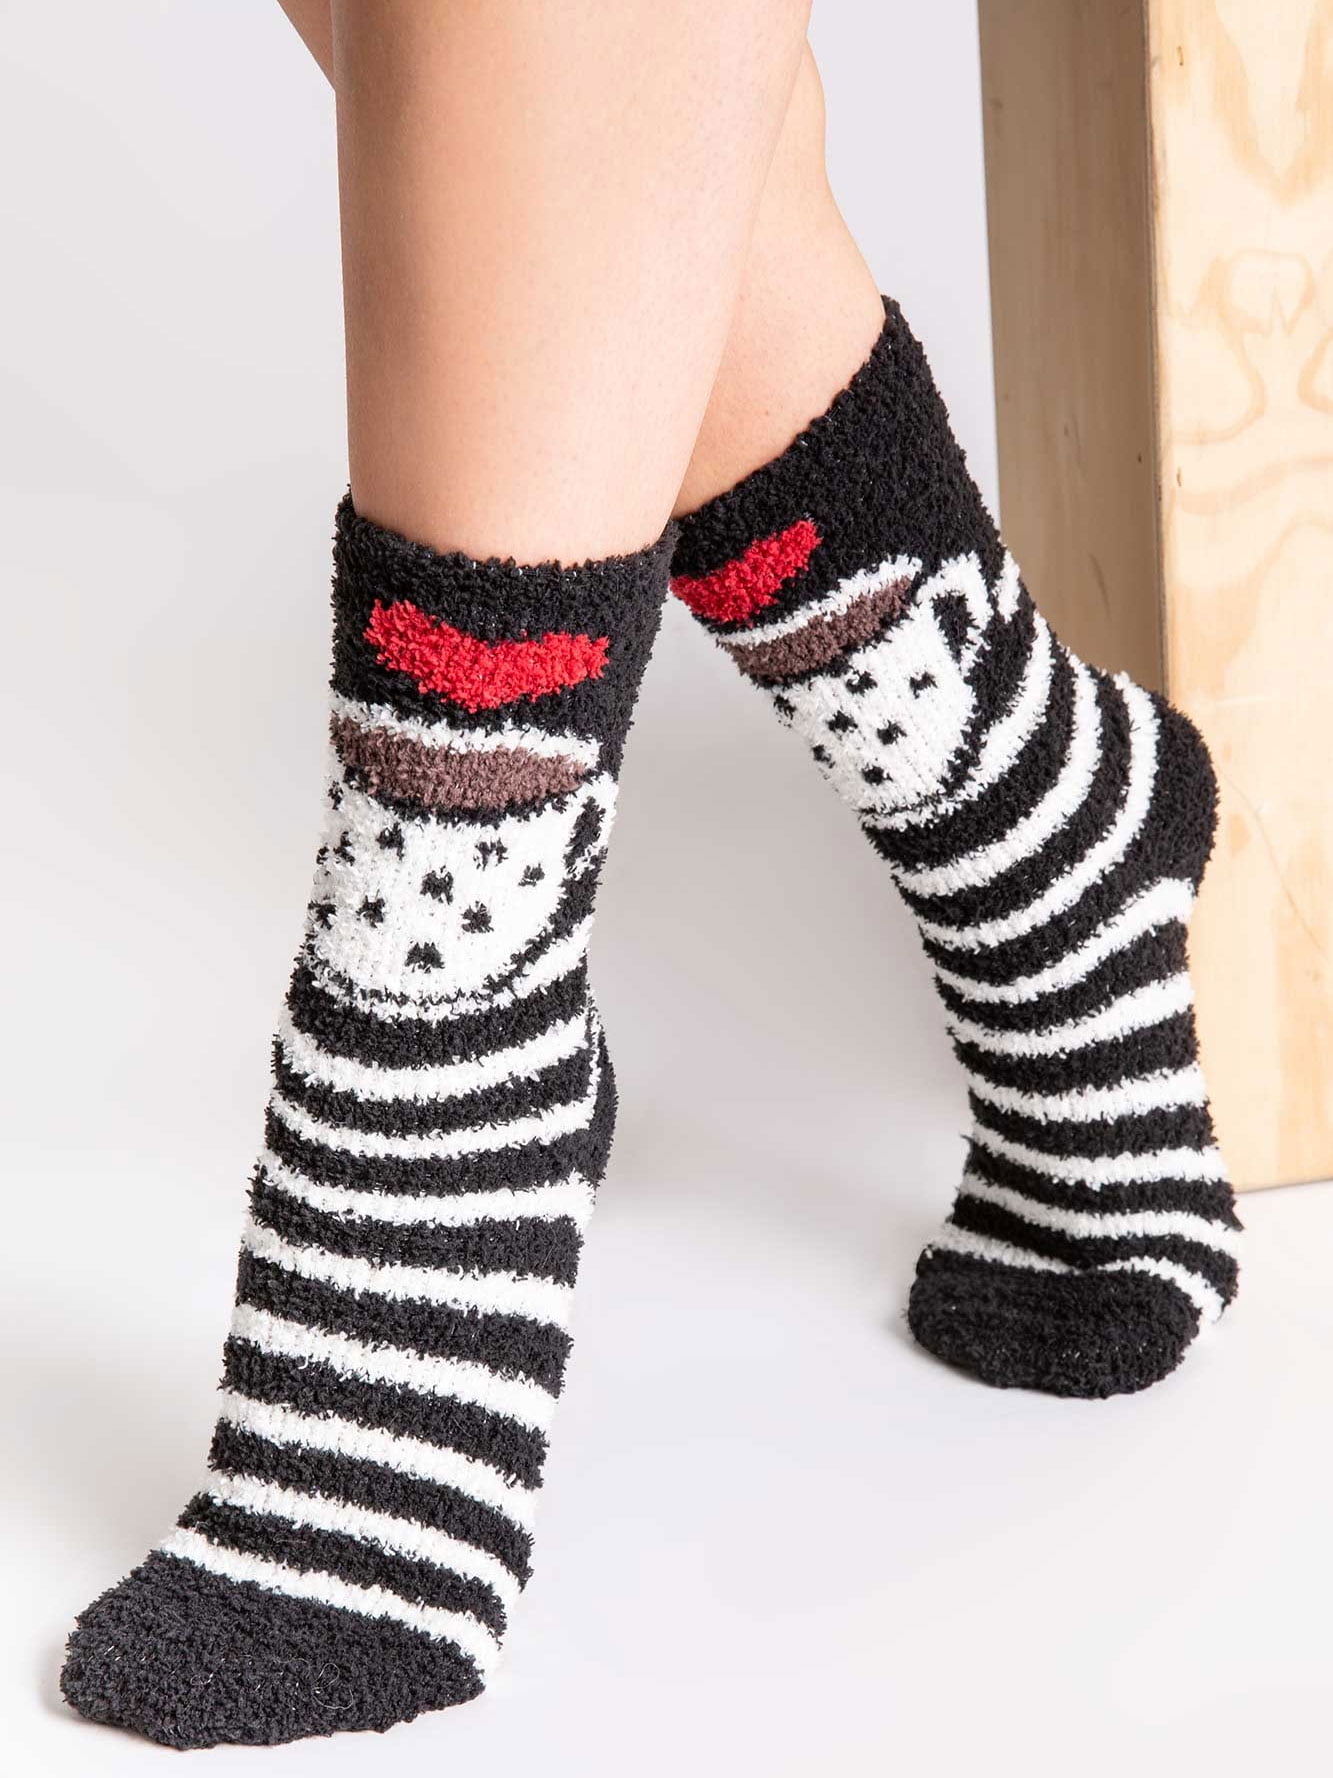 birkenstocks with fuzzy socks